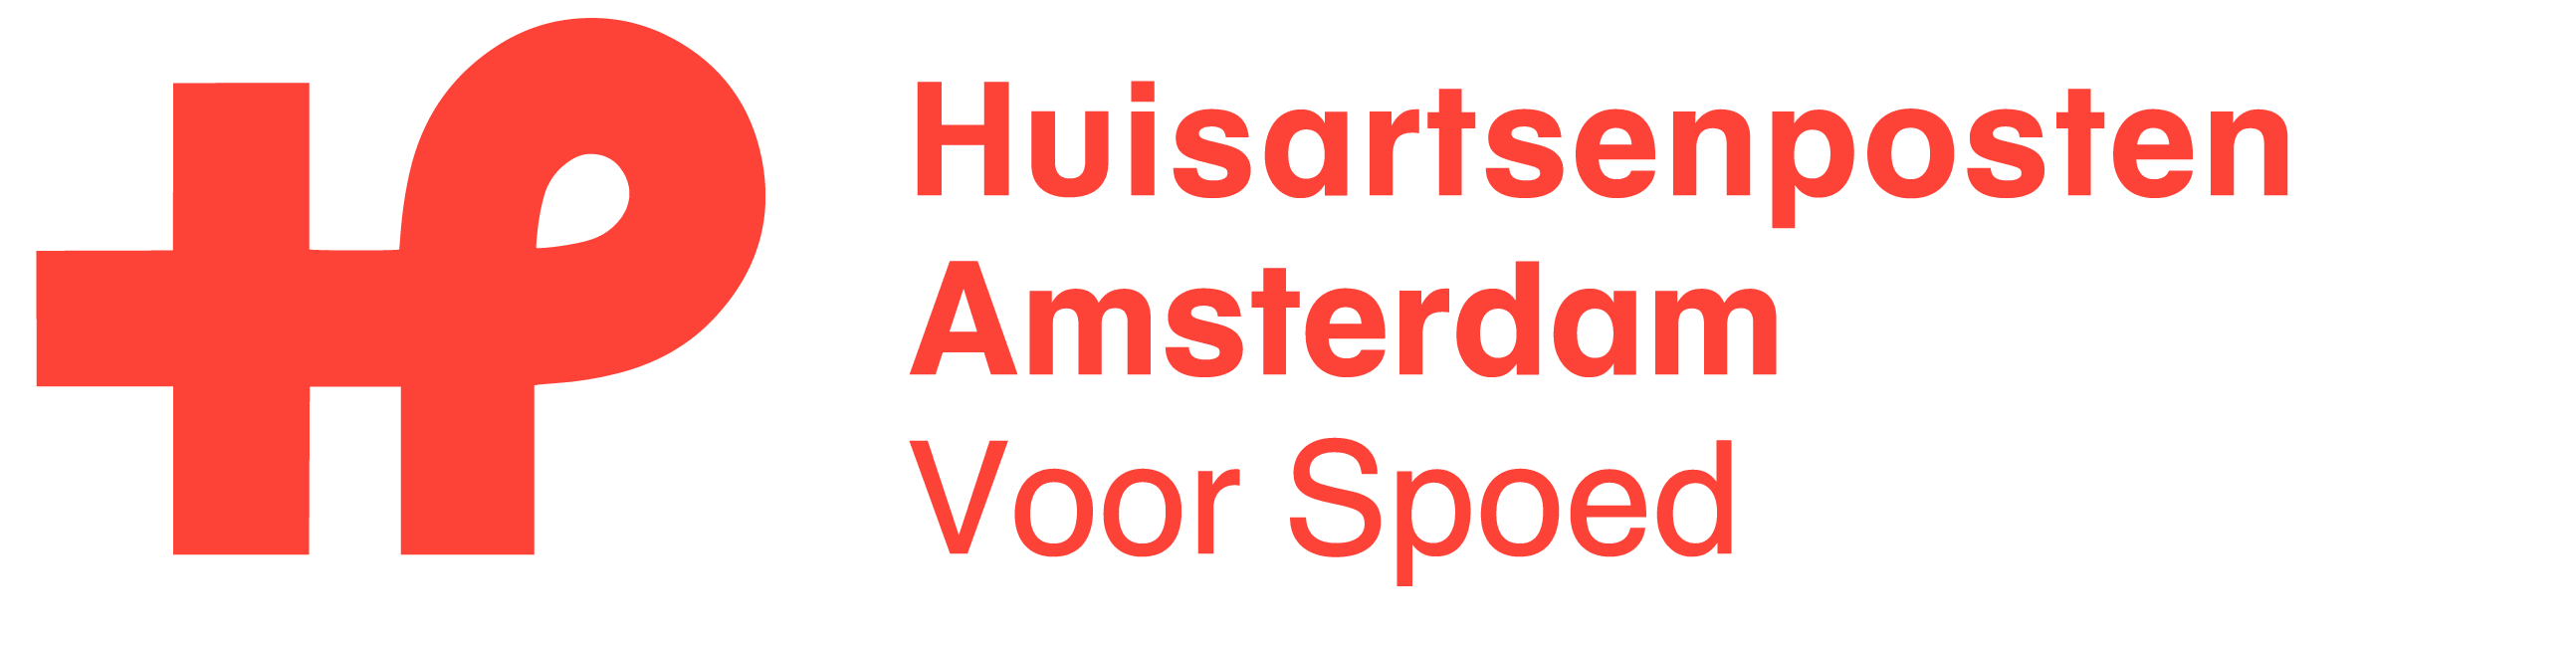 Huisartsenposten Amsterdam